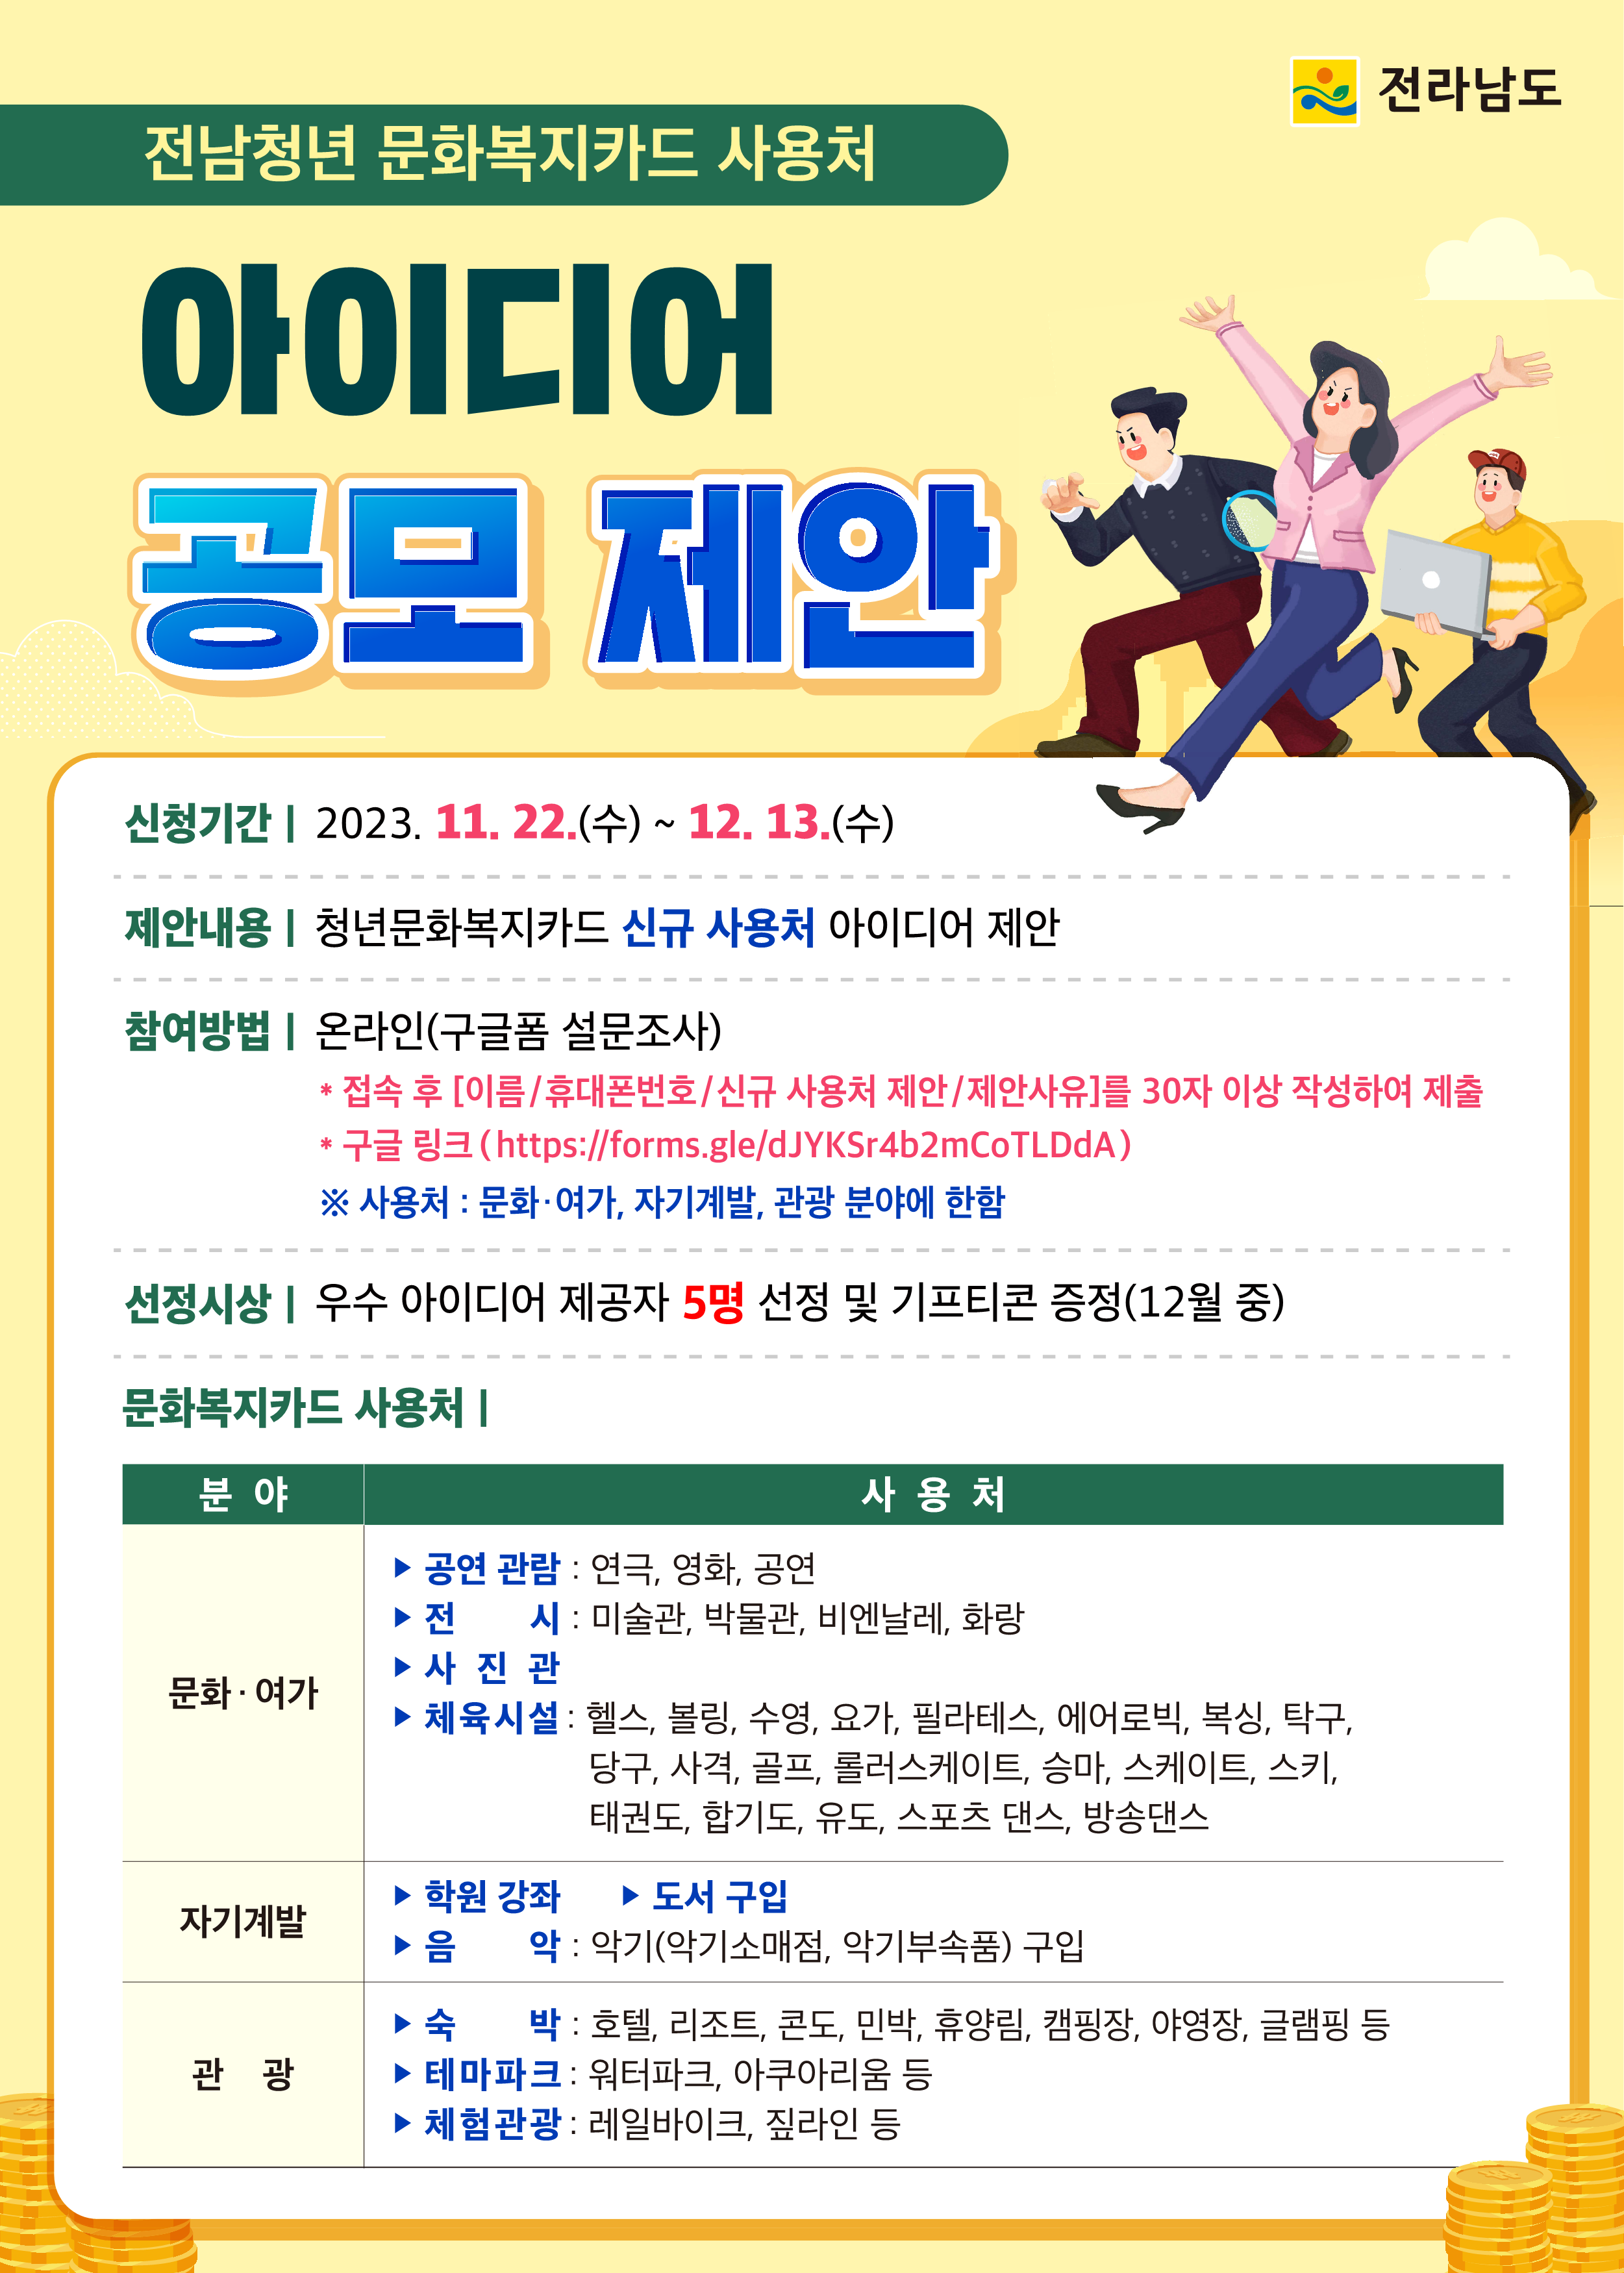 전남청년 문화복지카드 사용처 아이디어 공모 진행(~12/13)1